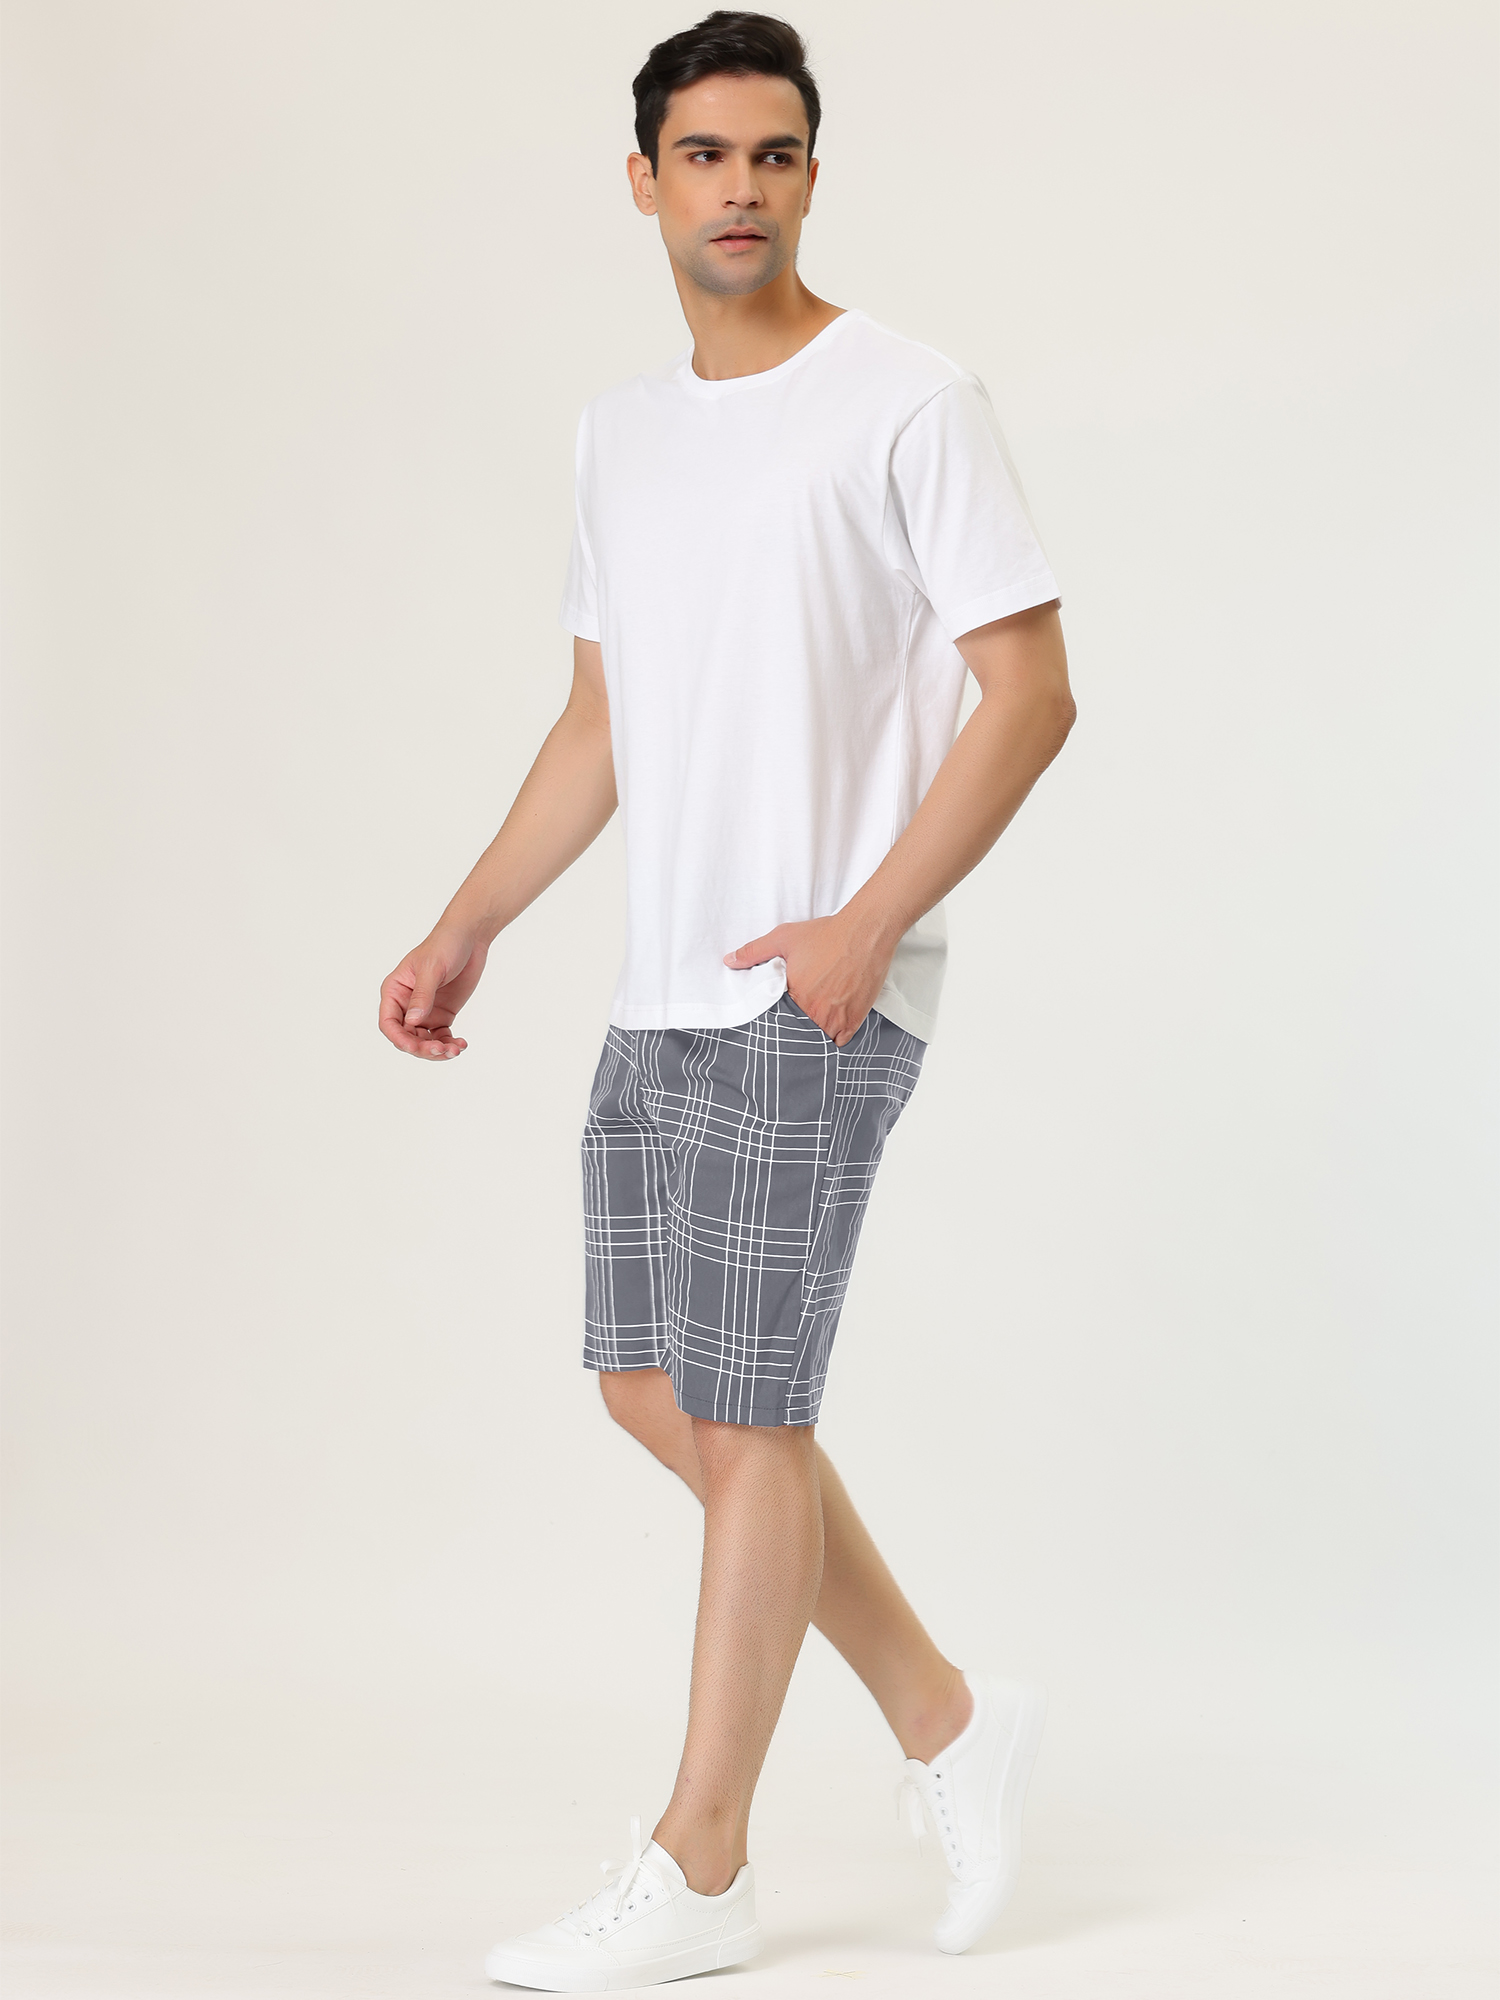 Unique Bargains Lars Amadeus Men's Summer Plaid Shorts Slim Fit Business Chino Short Pants